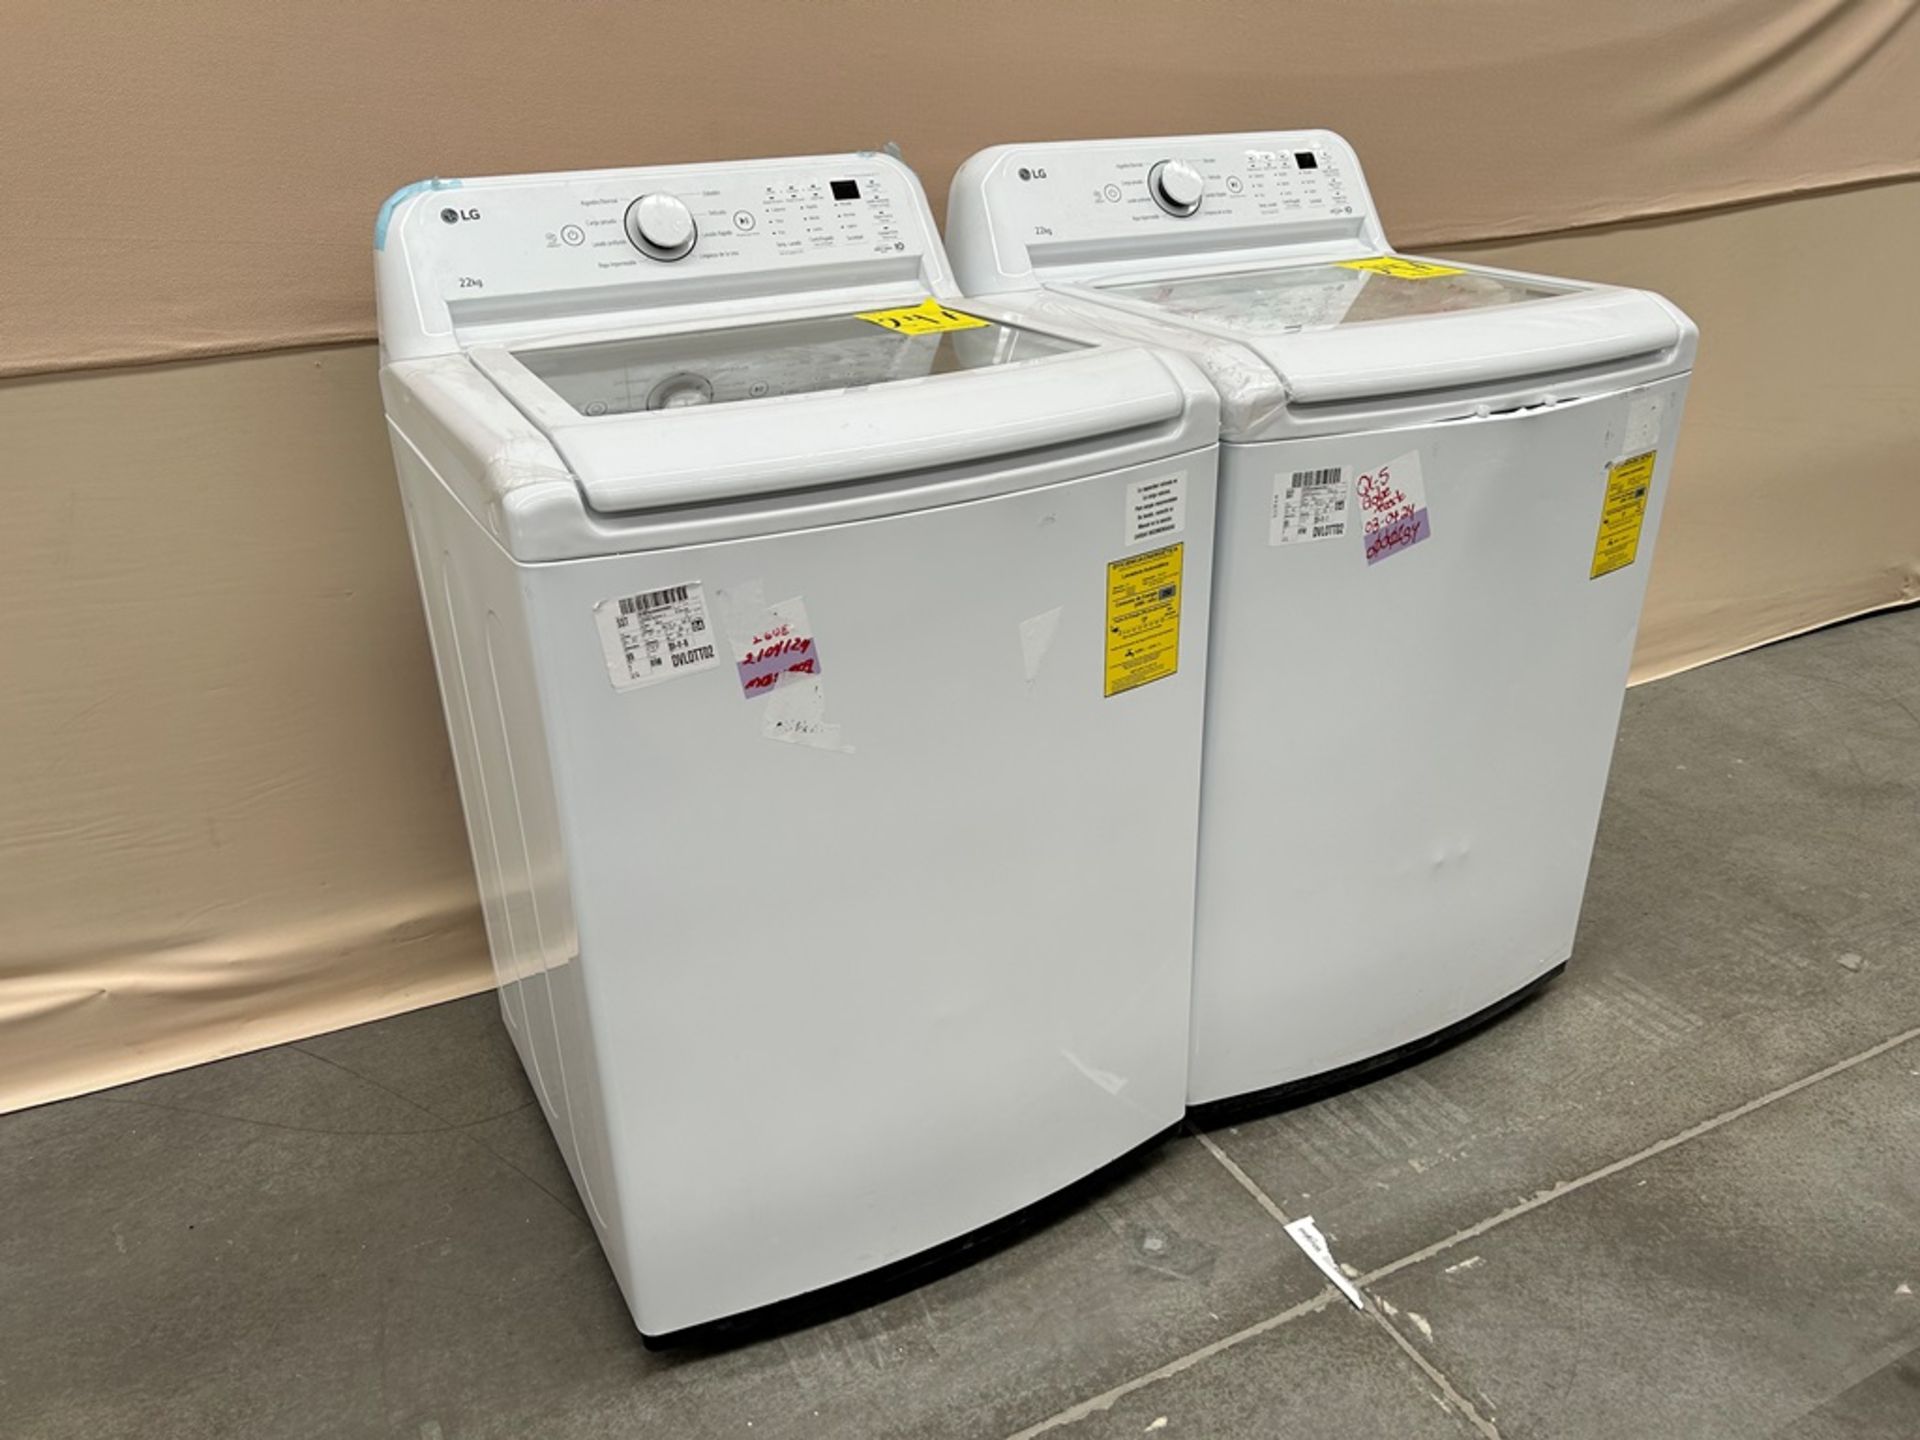 Lote de 2 lavadoras contiene: 1 Lavadora de 22 KG Marca LG, Modelo WT22WT6HK, Serie 37591, Color BL - Image 2 of 6